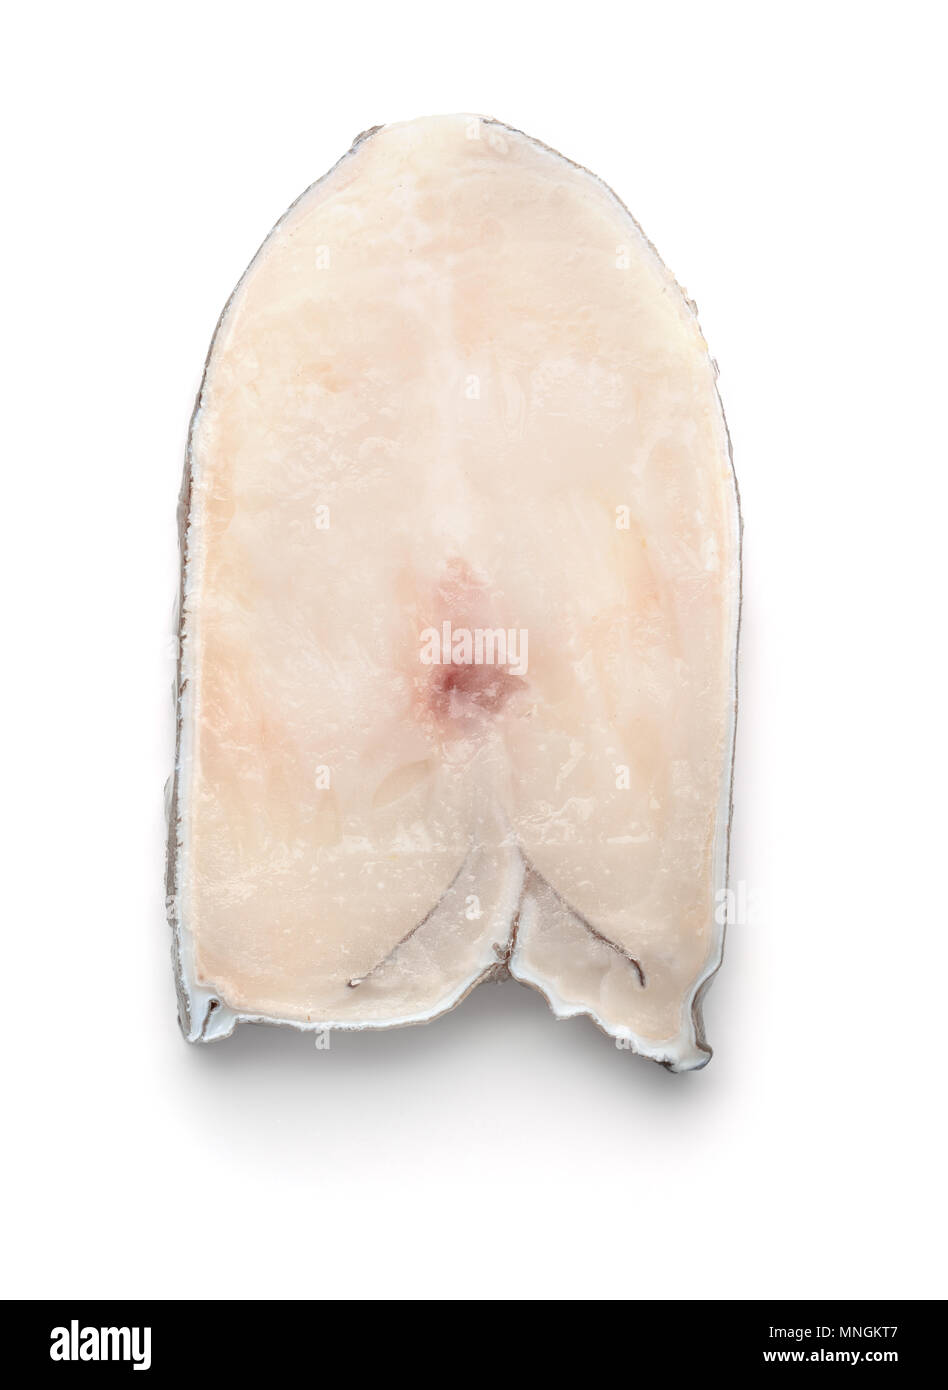 Vista superior del filete de pescado blanco crudo fresco aislado en blanco Foto de stock